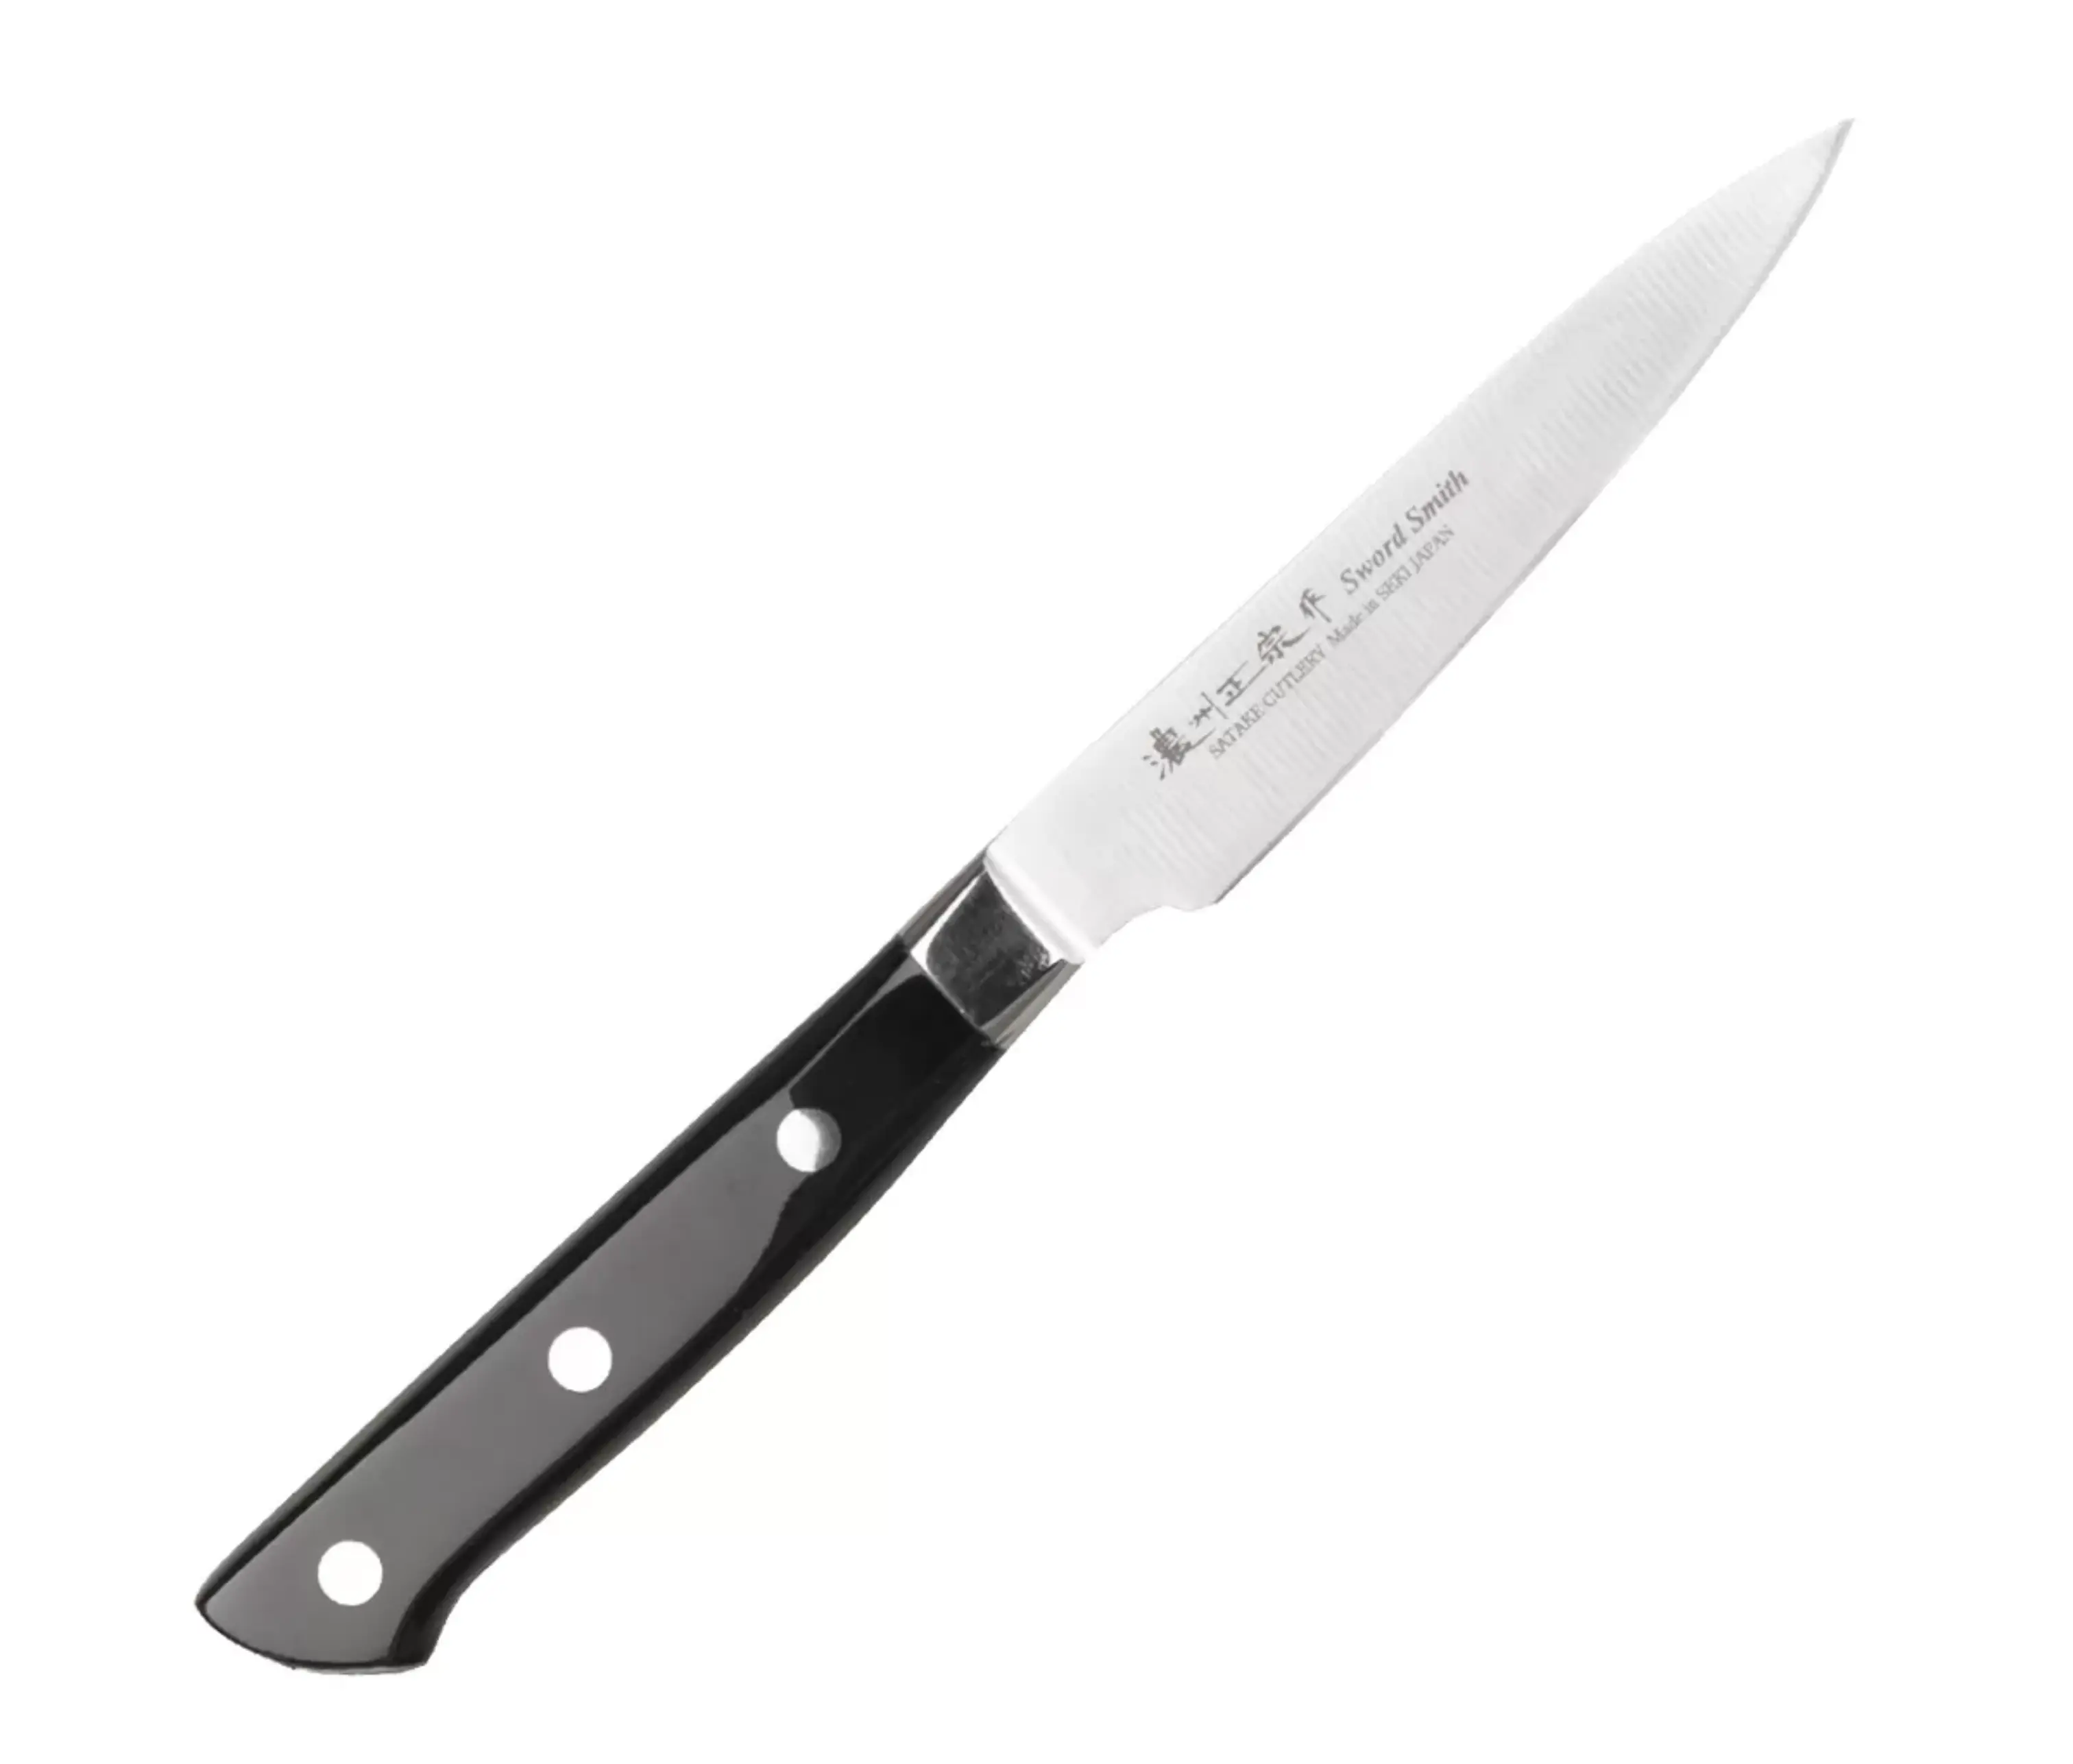 Нож кухонный для Овощей Satake "StainlessBolster" 100мм, сталь DSR1K6-58HRC ручка ABS пластик Япония